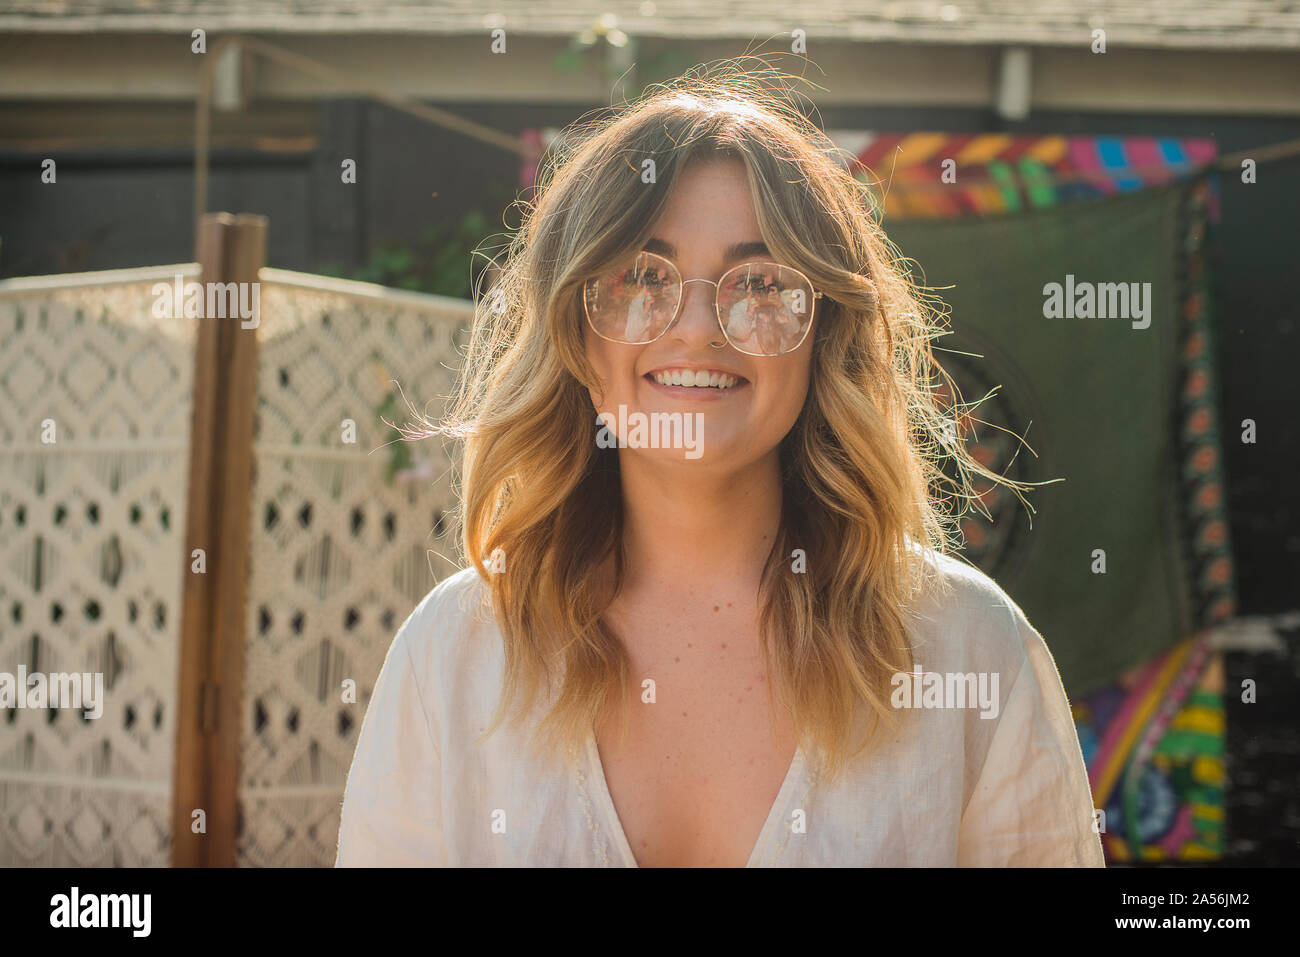 Junge Frau auf Gemeinschaftsebene Garden Party, Kopf und Schulter portrait Stockfoto